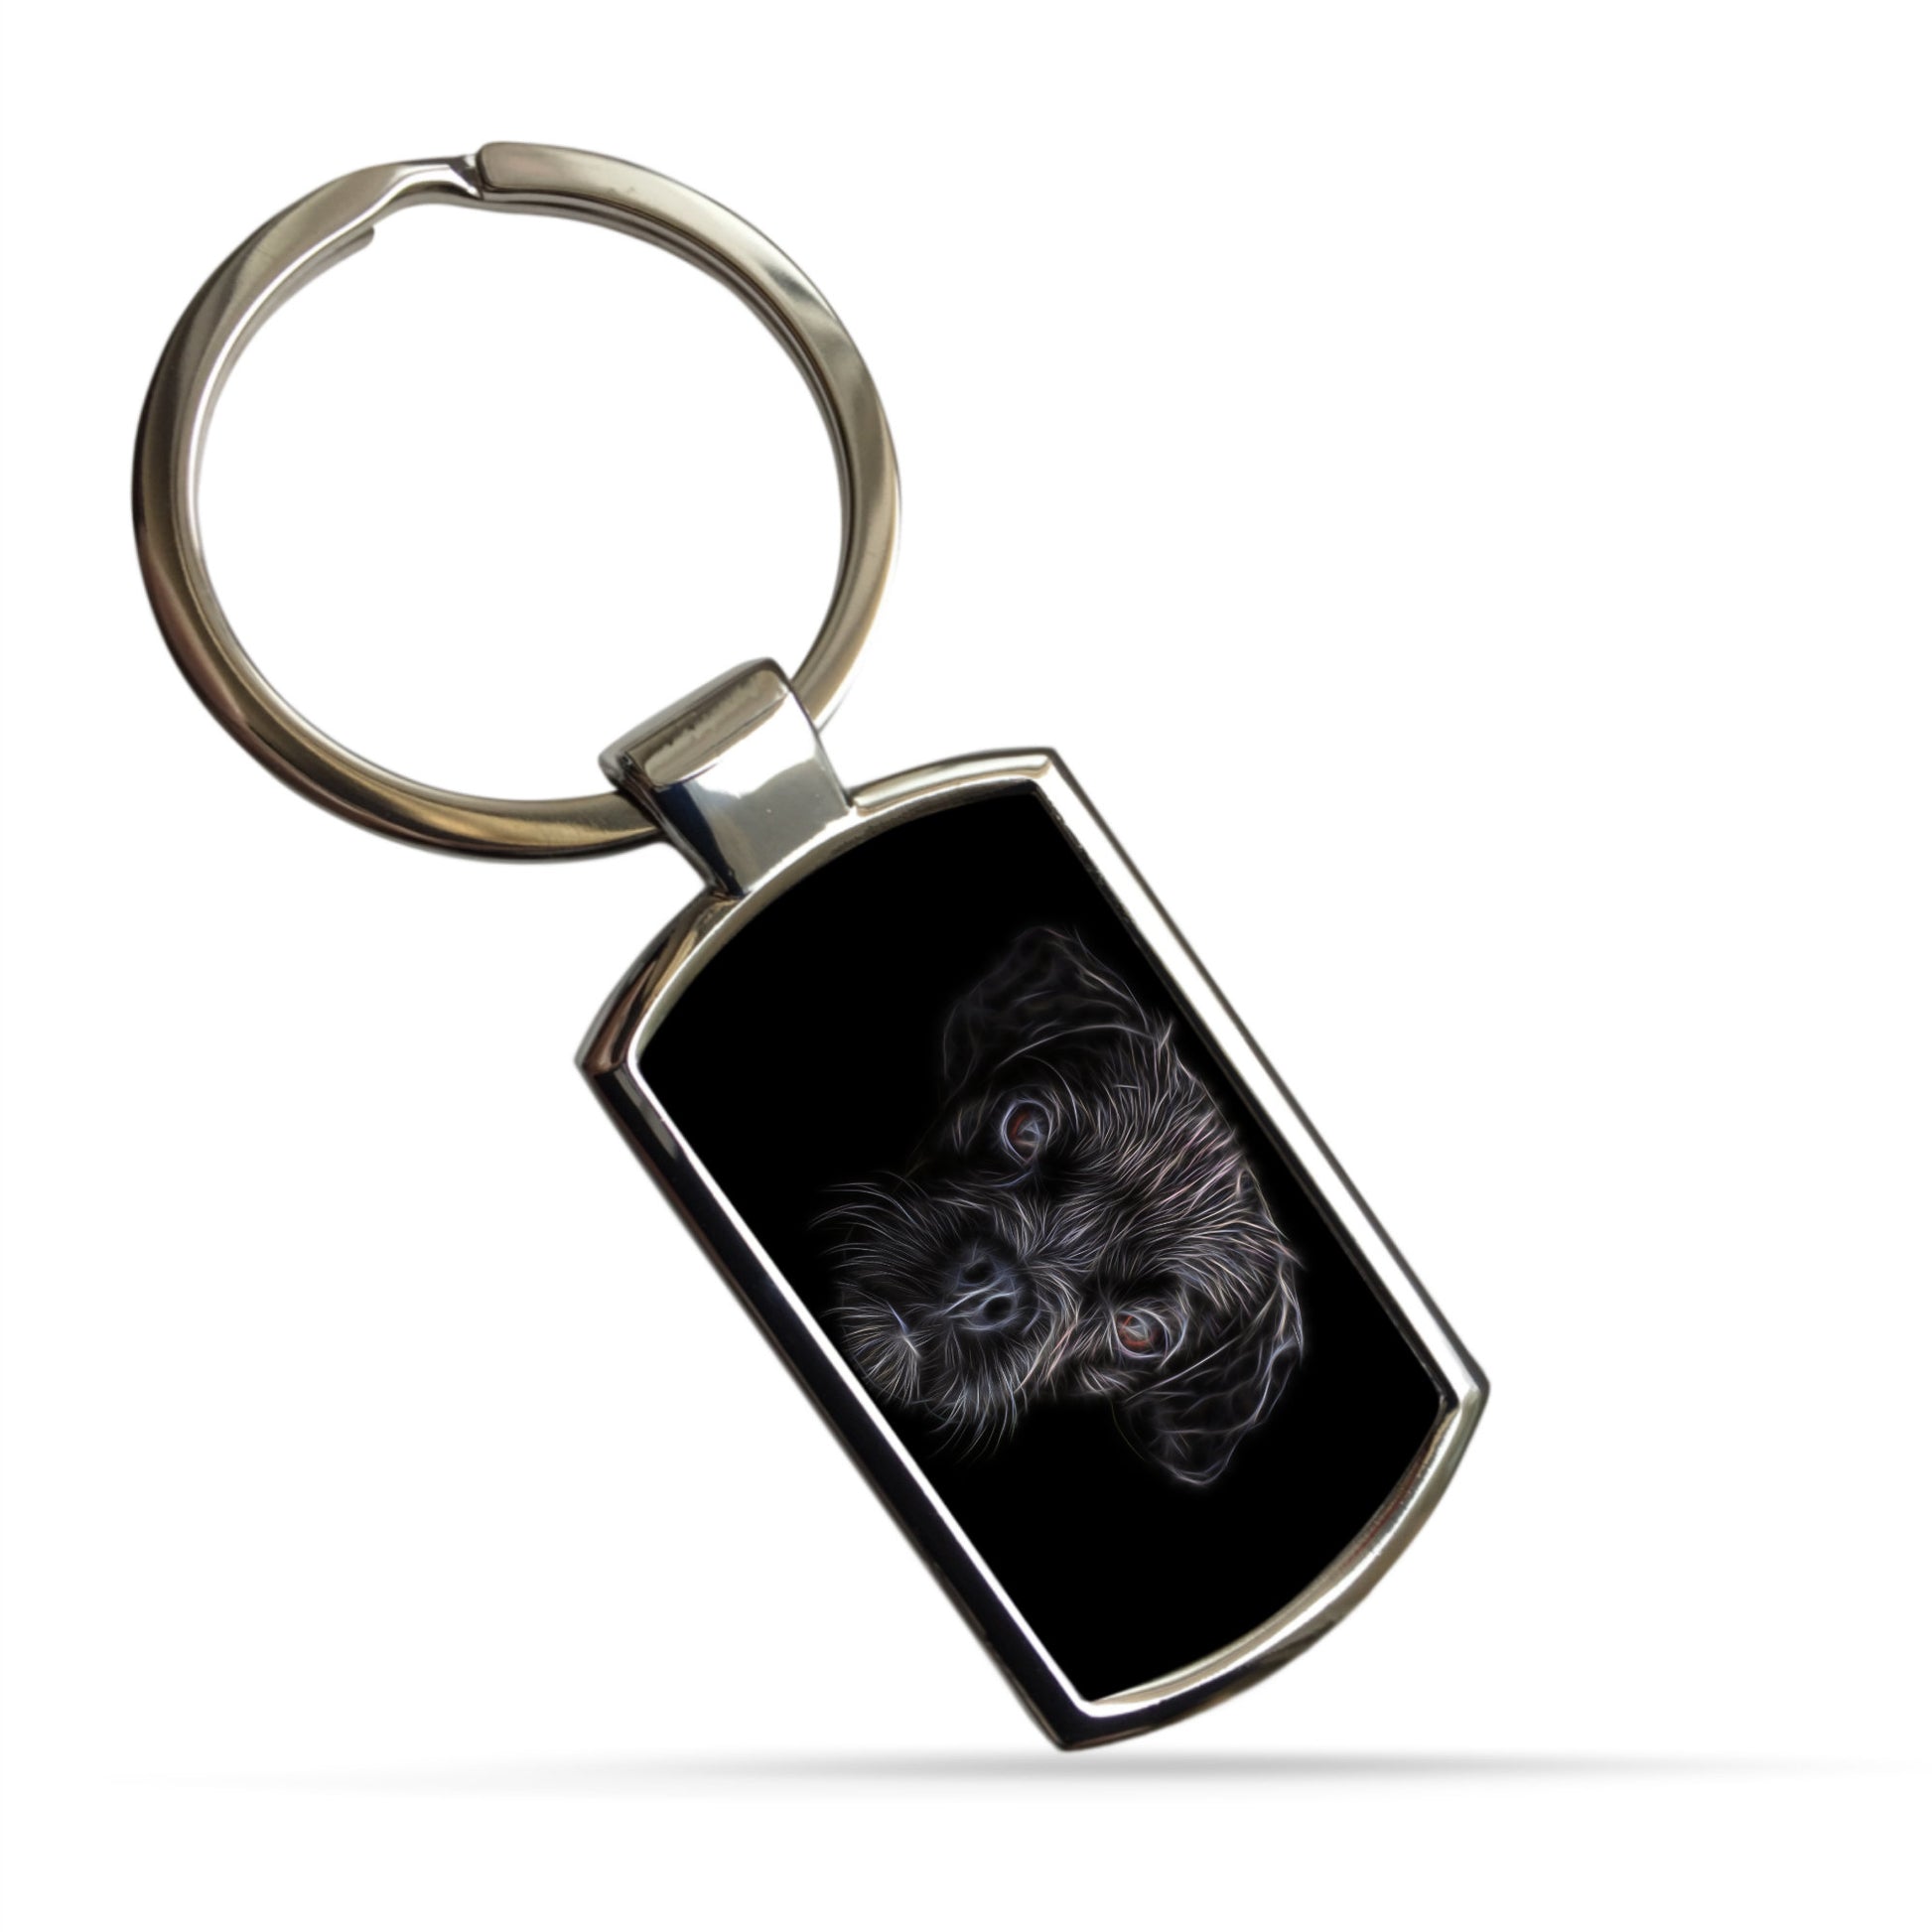 Black Puggle Dog Keychain with Fractal Art Design